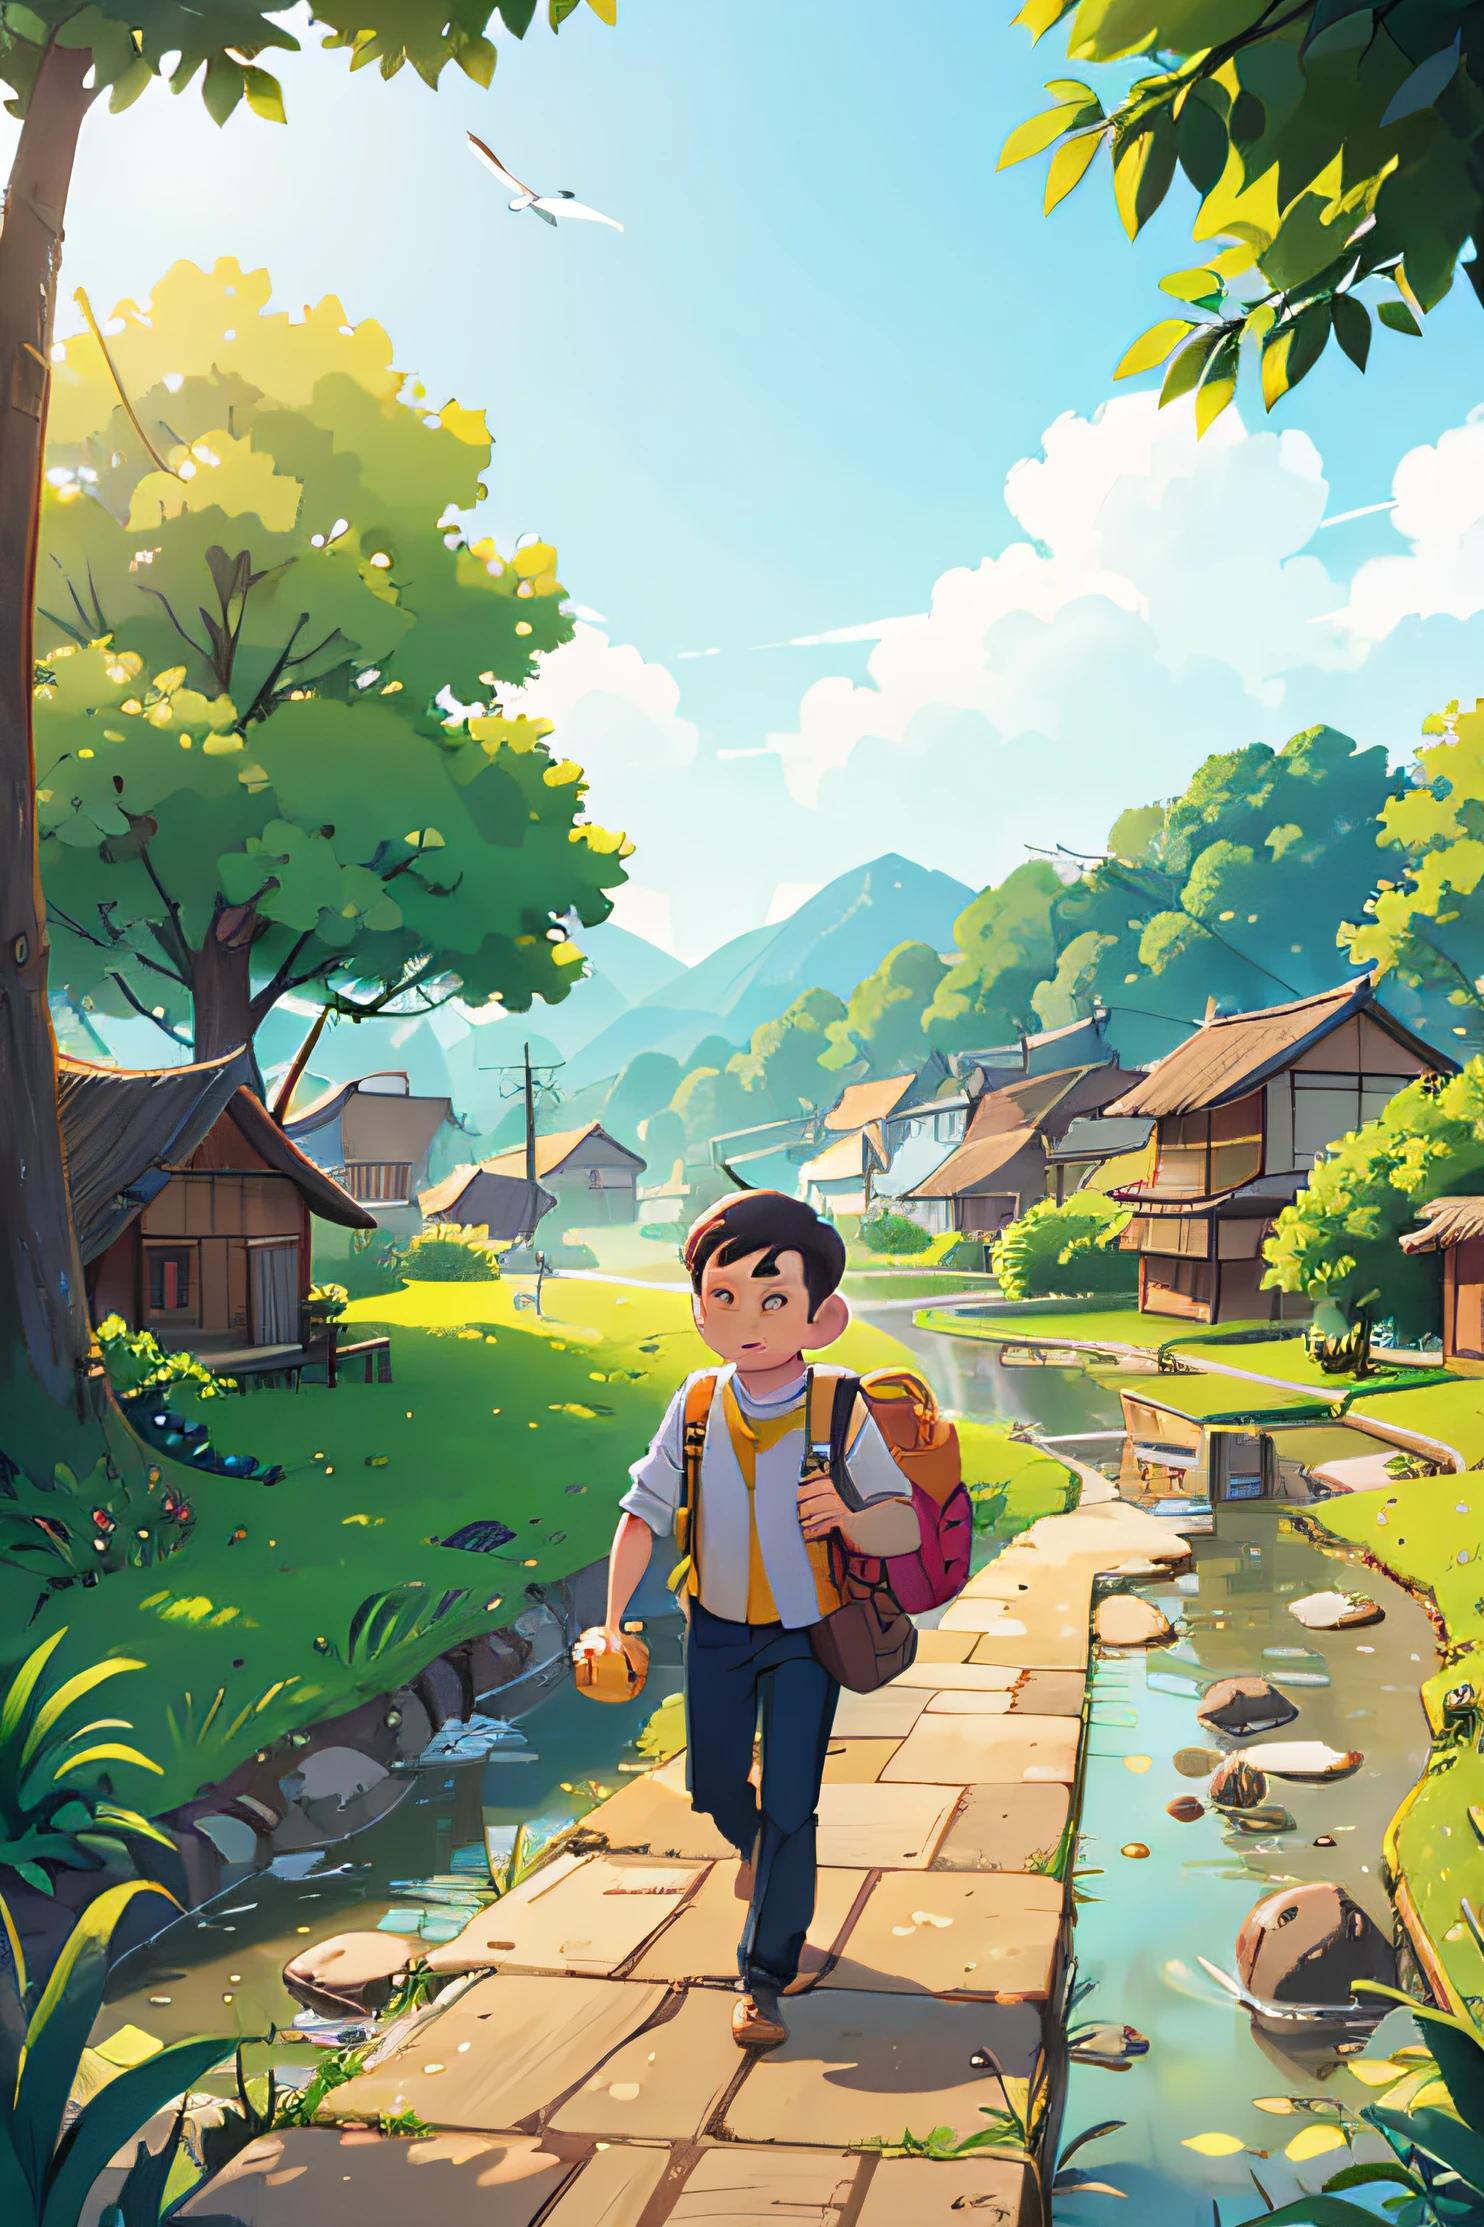 絵には黄色いバッグを持った男性が描かれている，私は川沿いを歩いています，遠くに家と田んぼが見える。